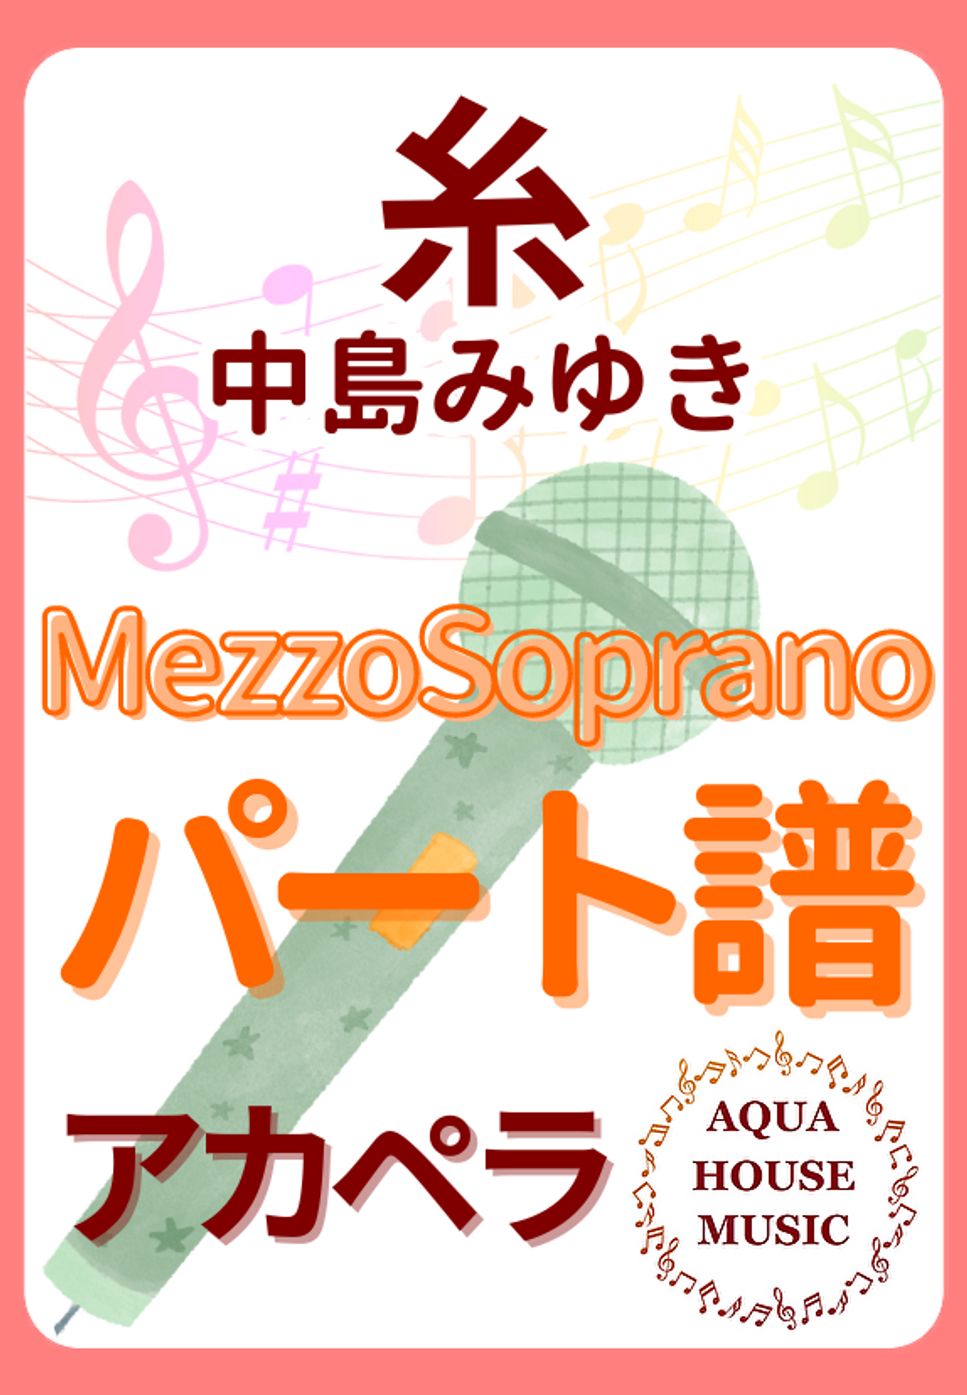 中島みゆき - 糸 (アカペラ楽譜♪MezzoSopranoパート譜) by 飯田 亜紗子